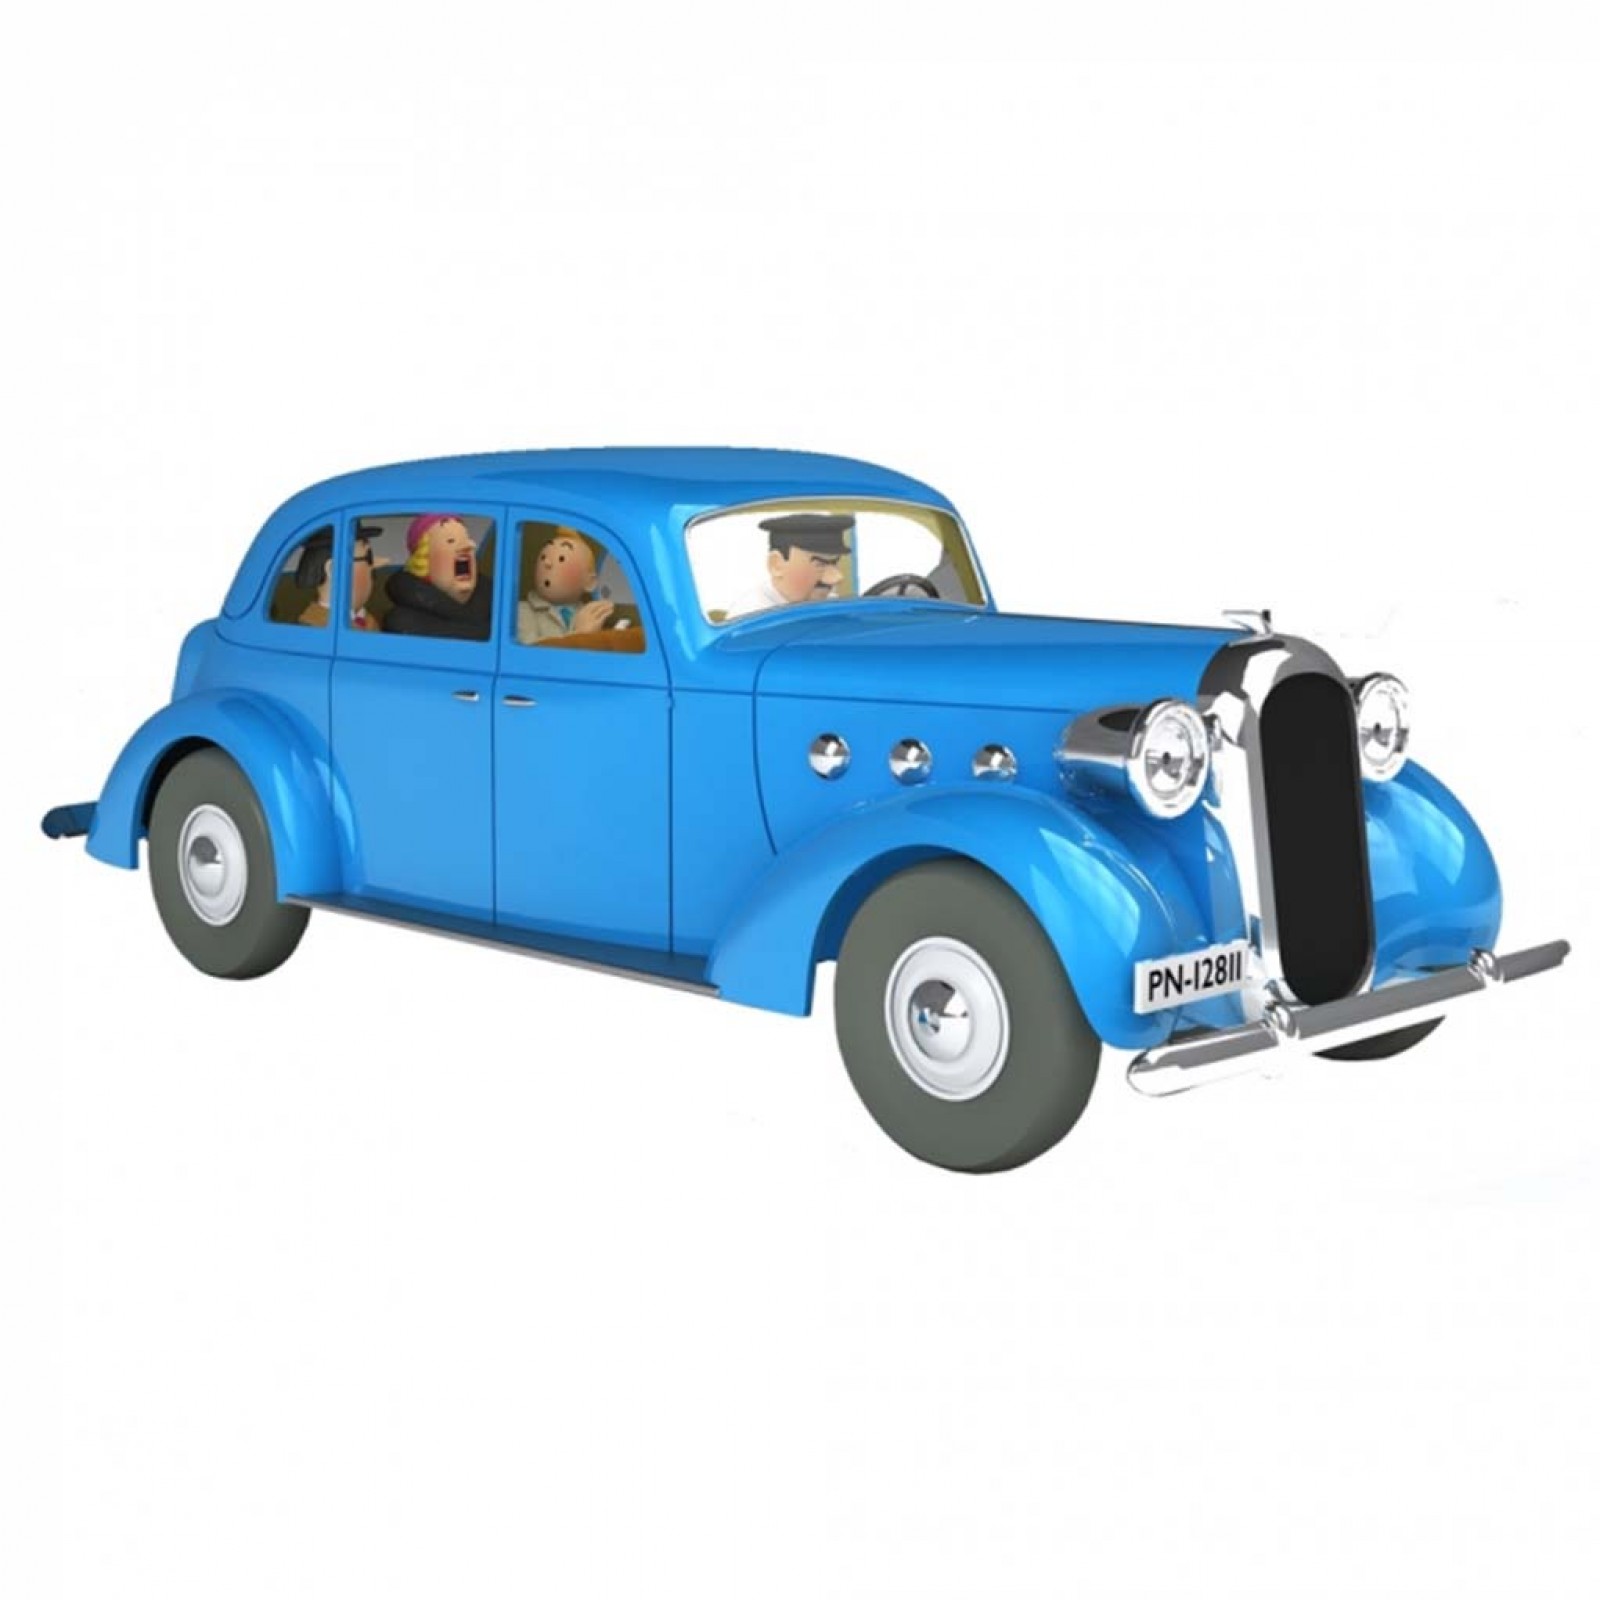 Les véhicules de Tintin au 1/24 : La voiture de la Castafiore dans